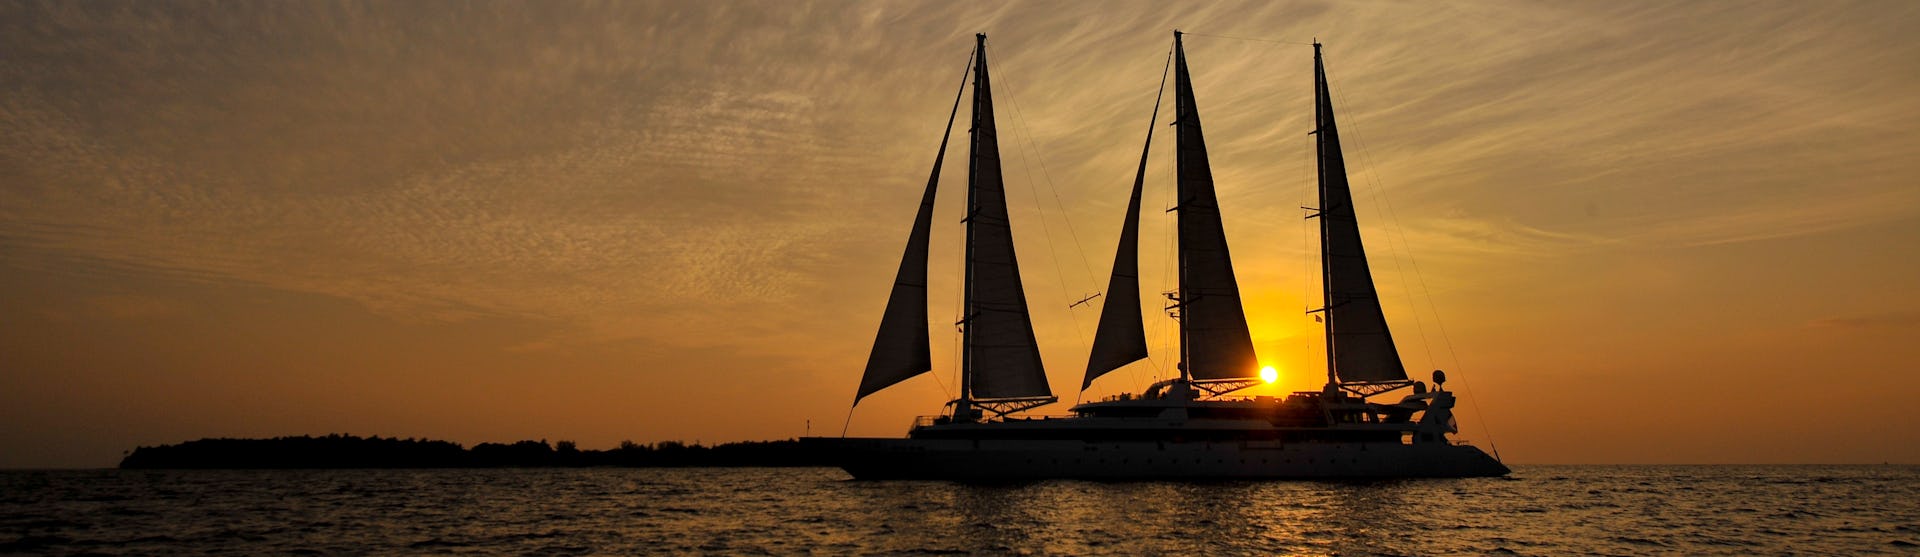 Kreuzfahrtschiff Le Ponant während der Fahrt im Sonnenuntergang